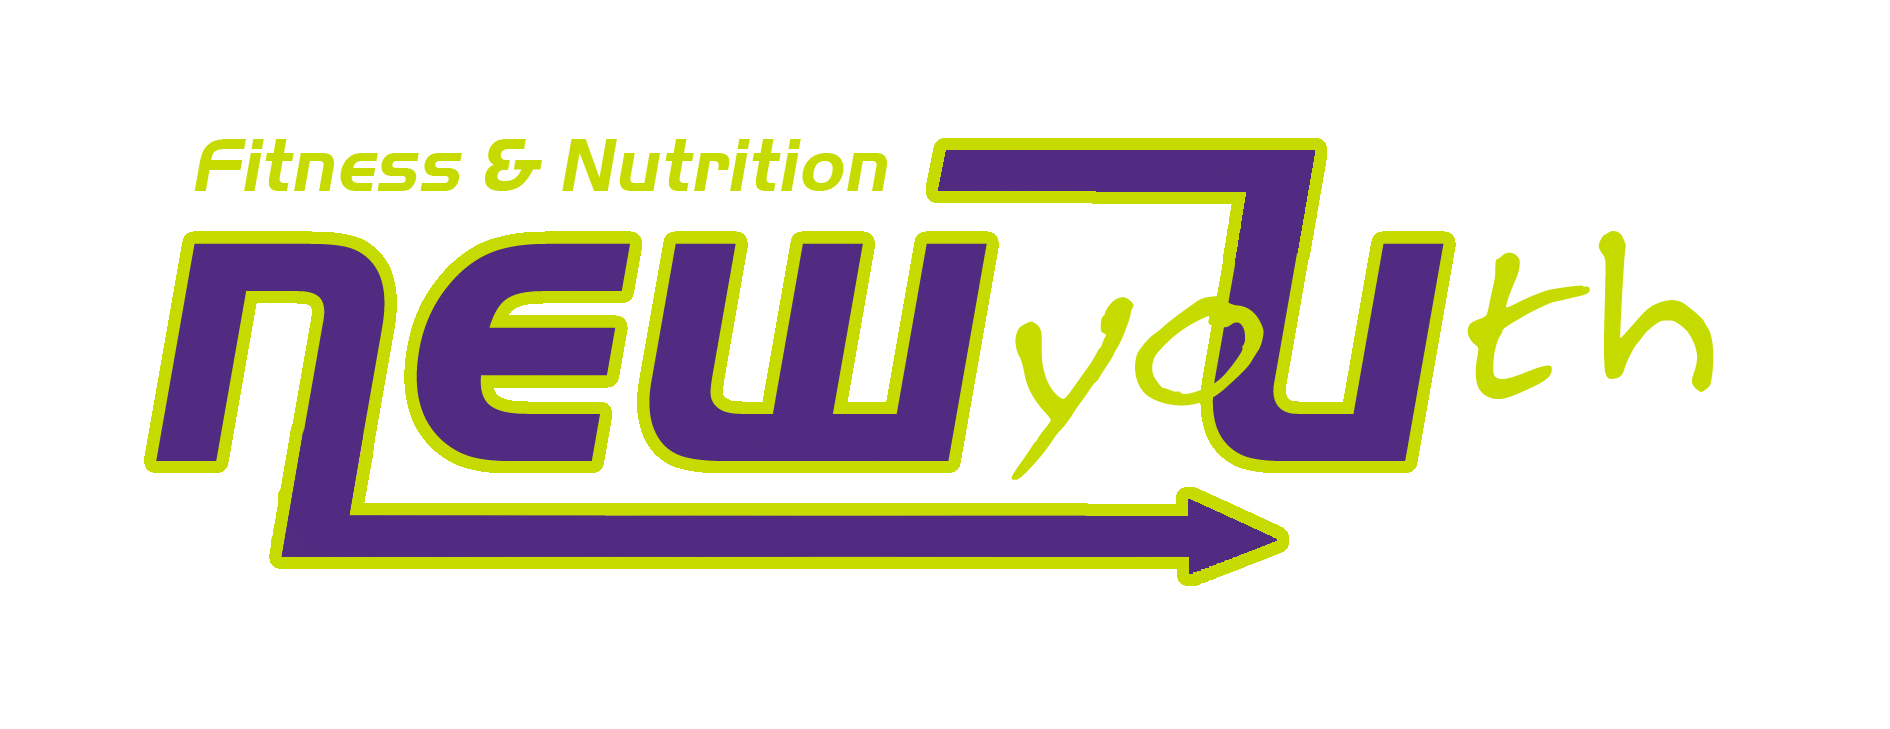 New Youth logo